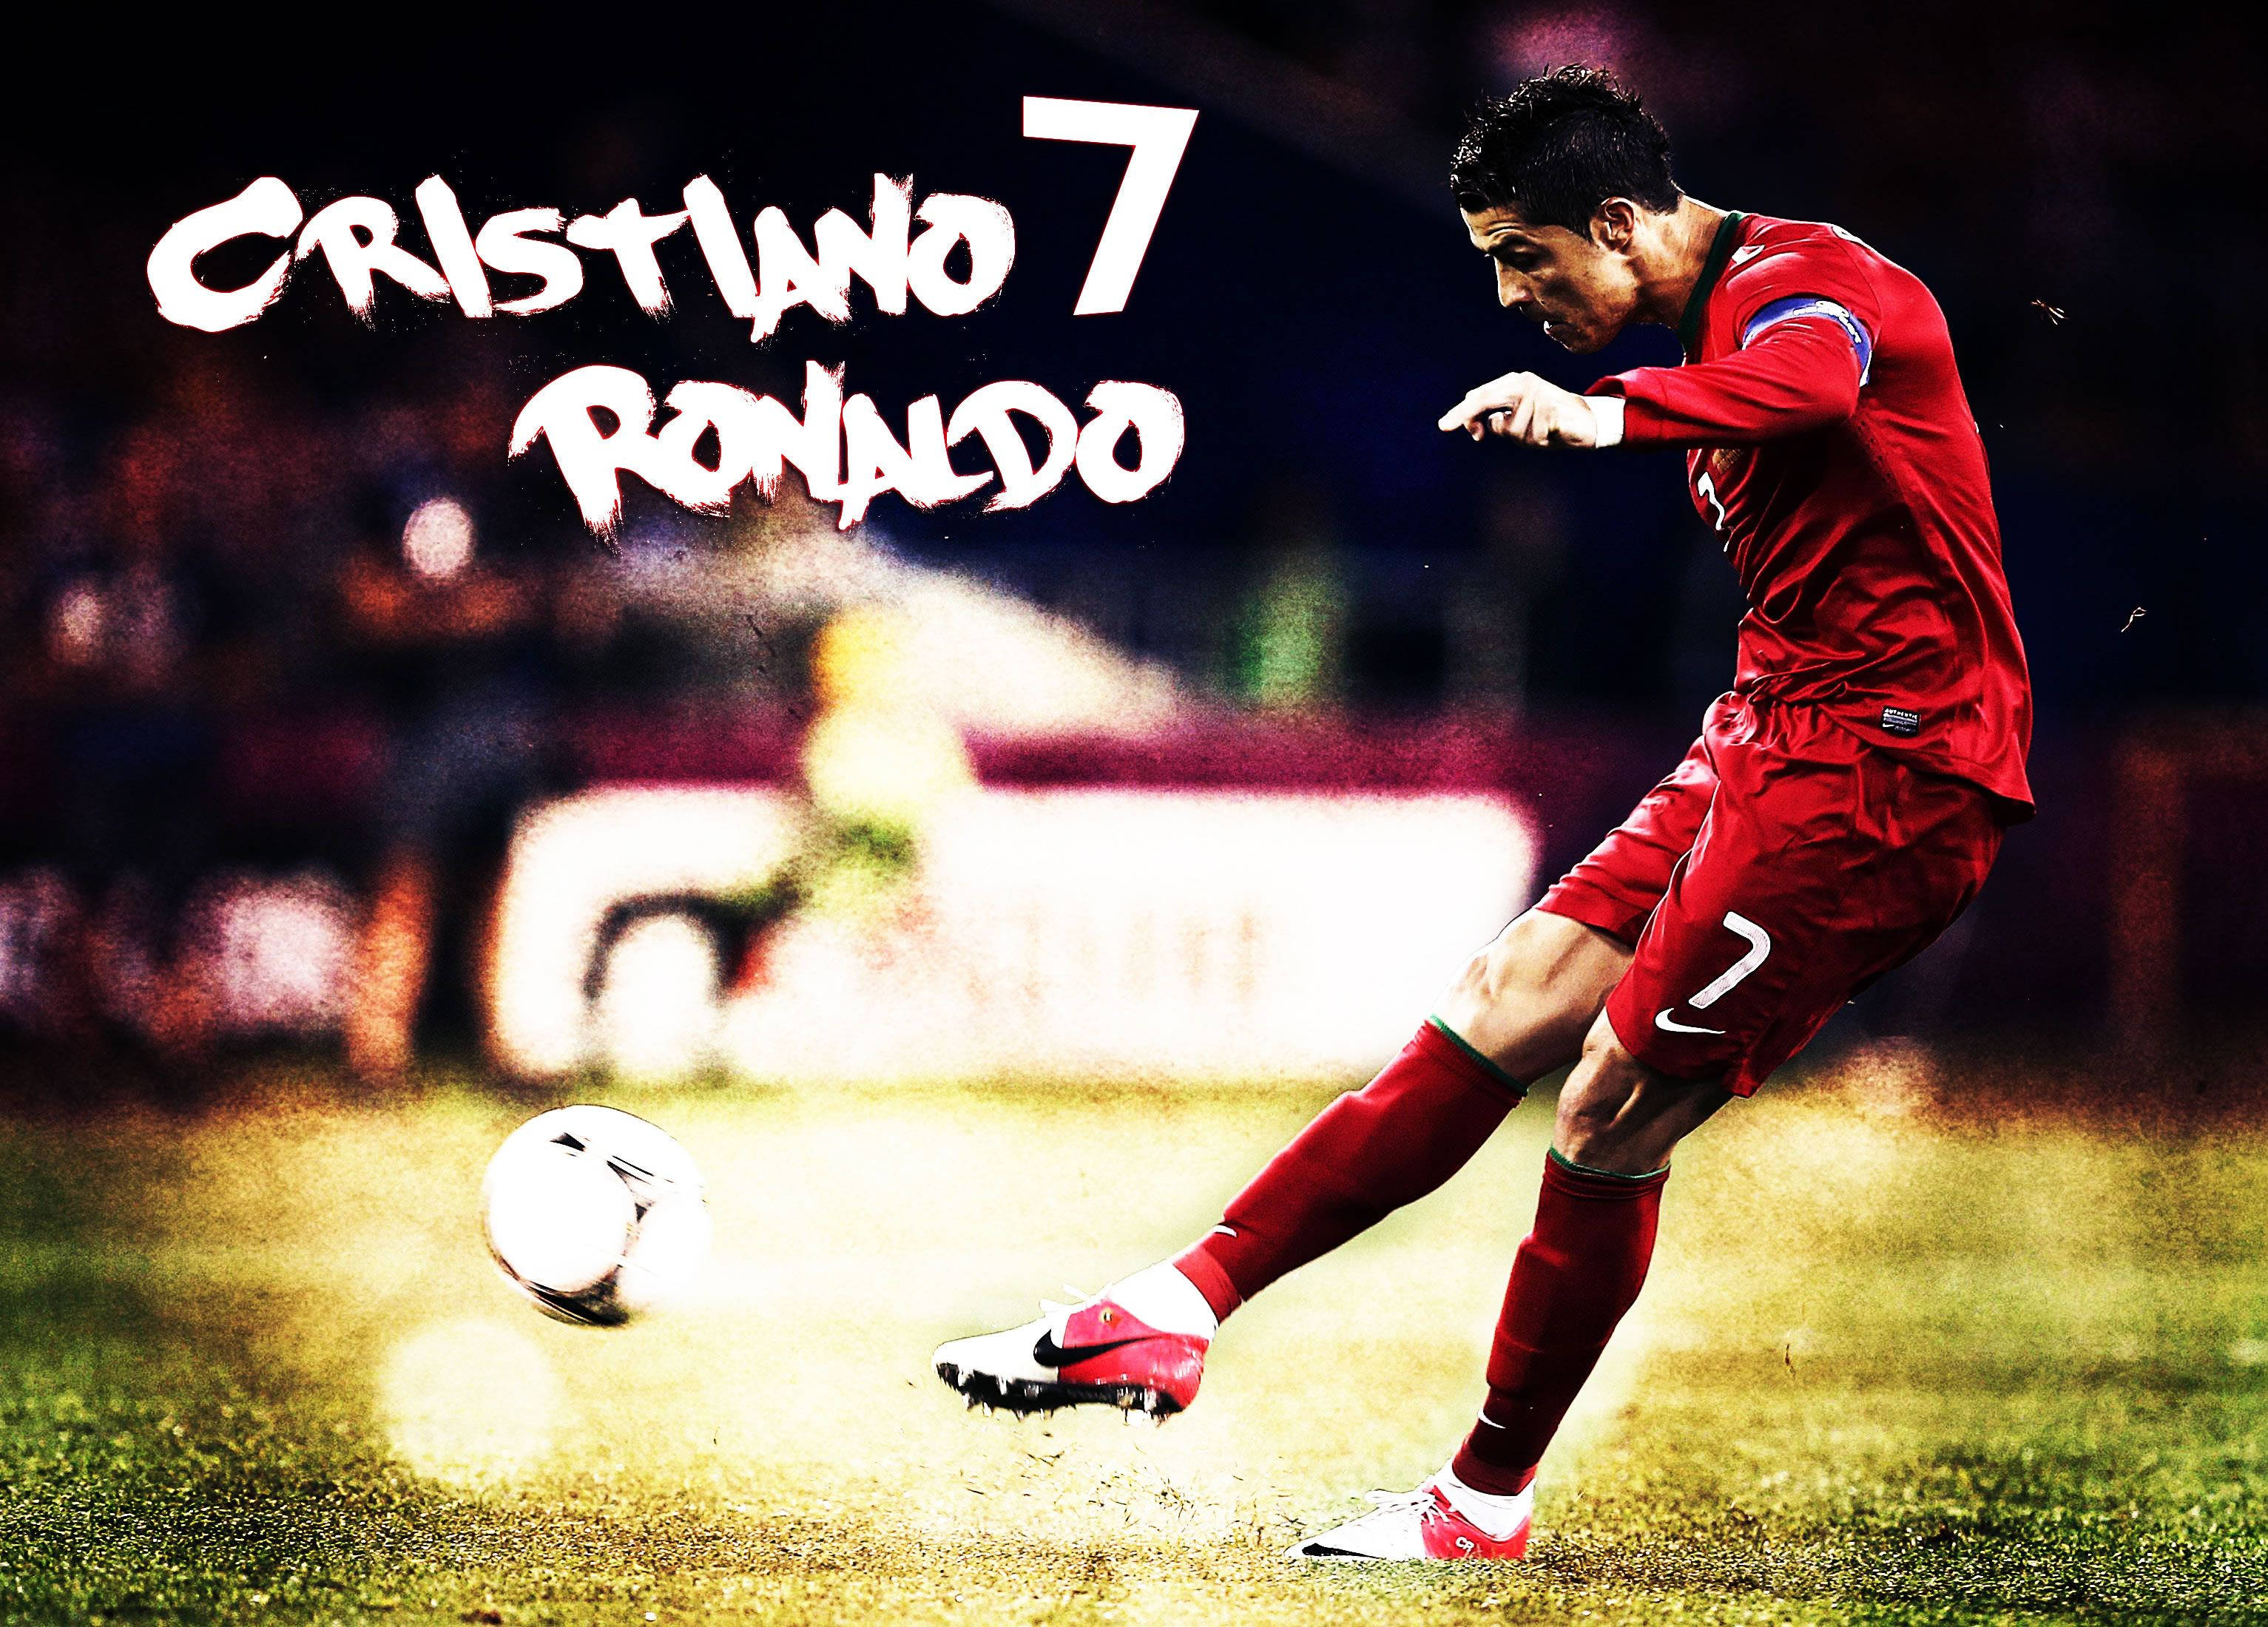 Cristiano Ronaldo Cool Mid Kick Graphic Art